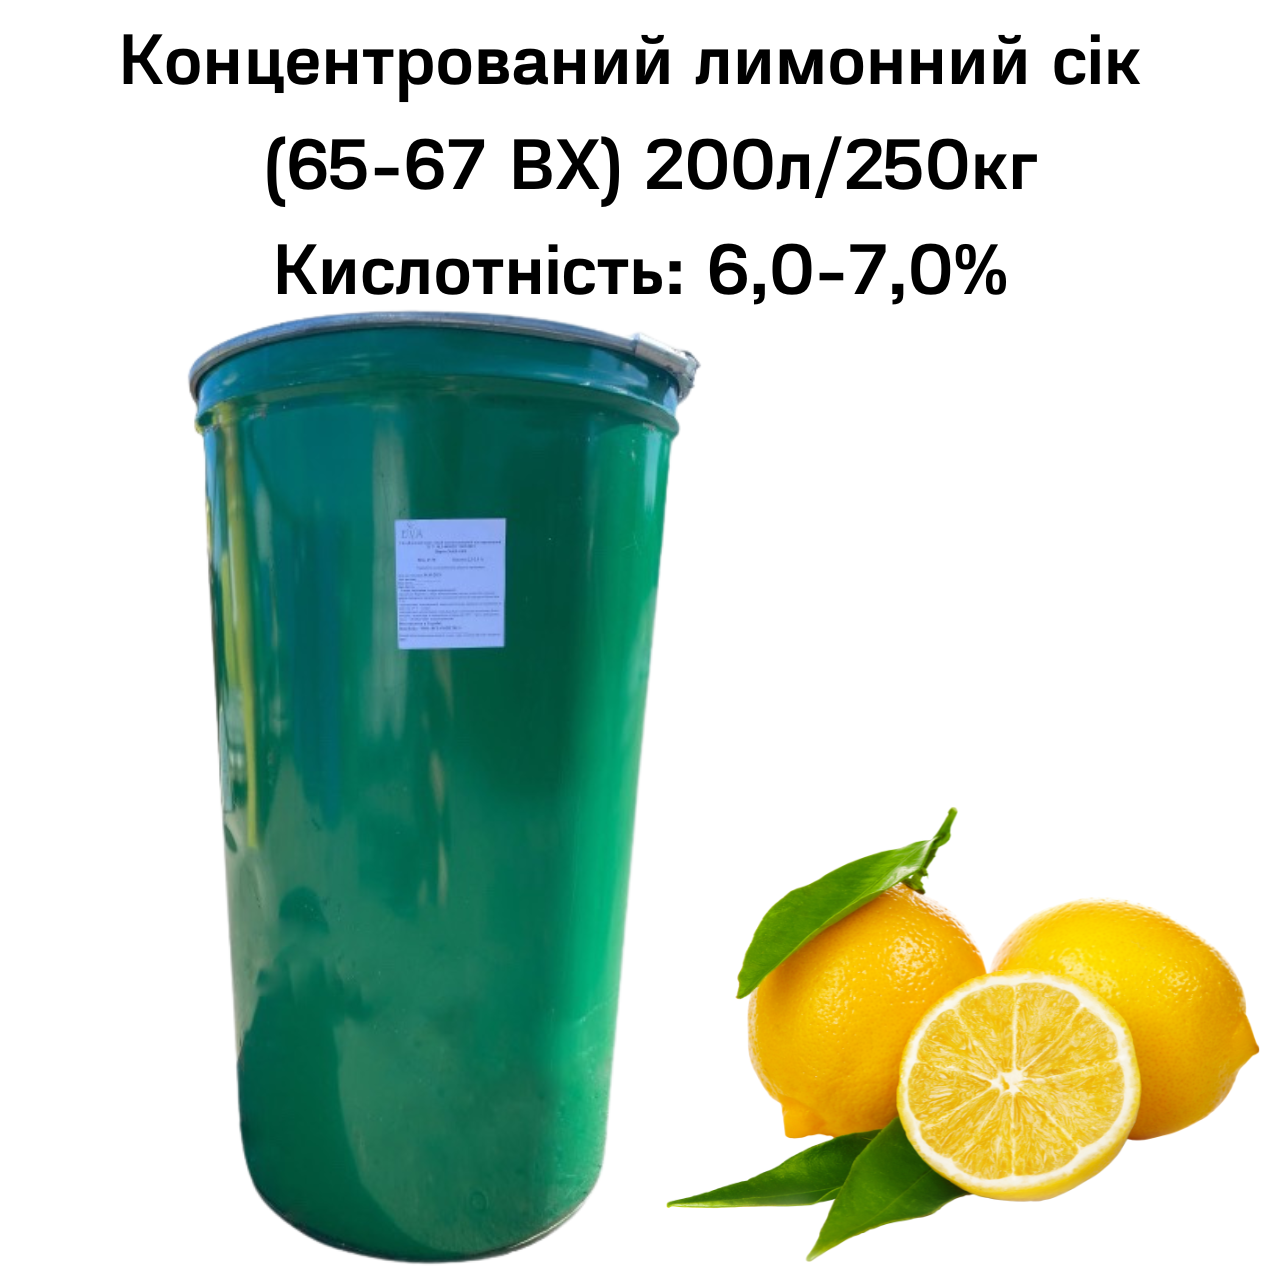 Сік лимонний концентрований Eva 65-67 ВХ бочка 200 л/250 кг - фото 2